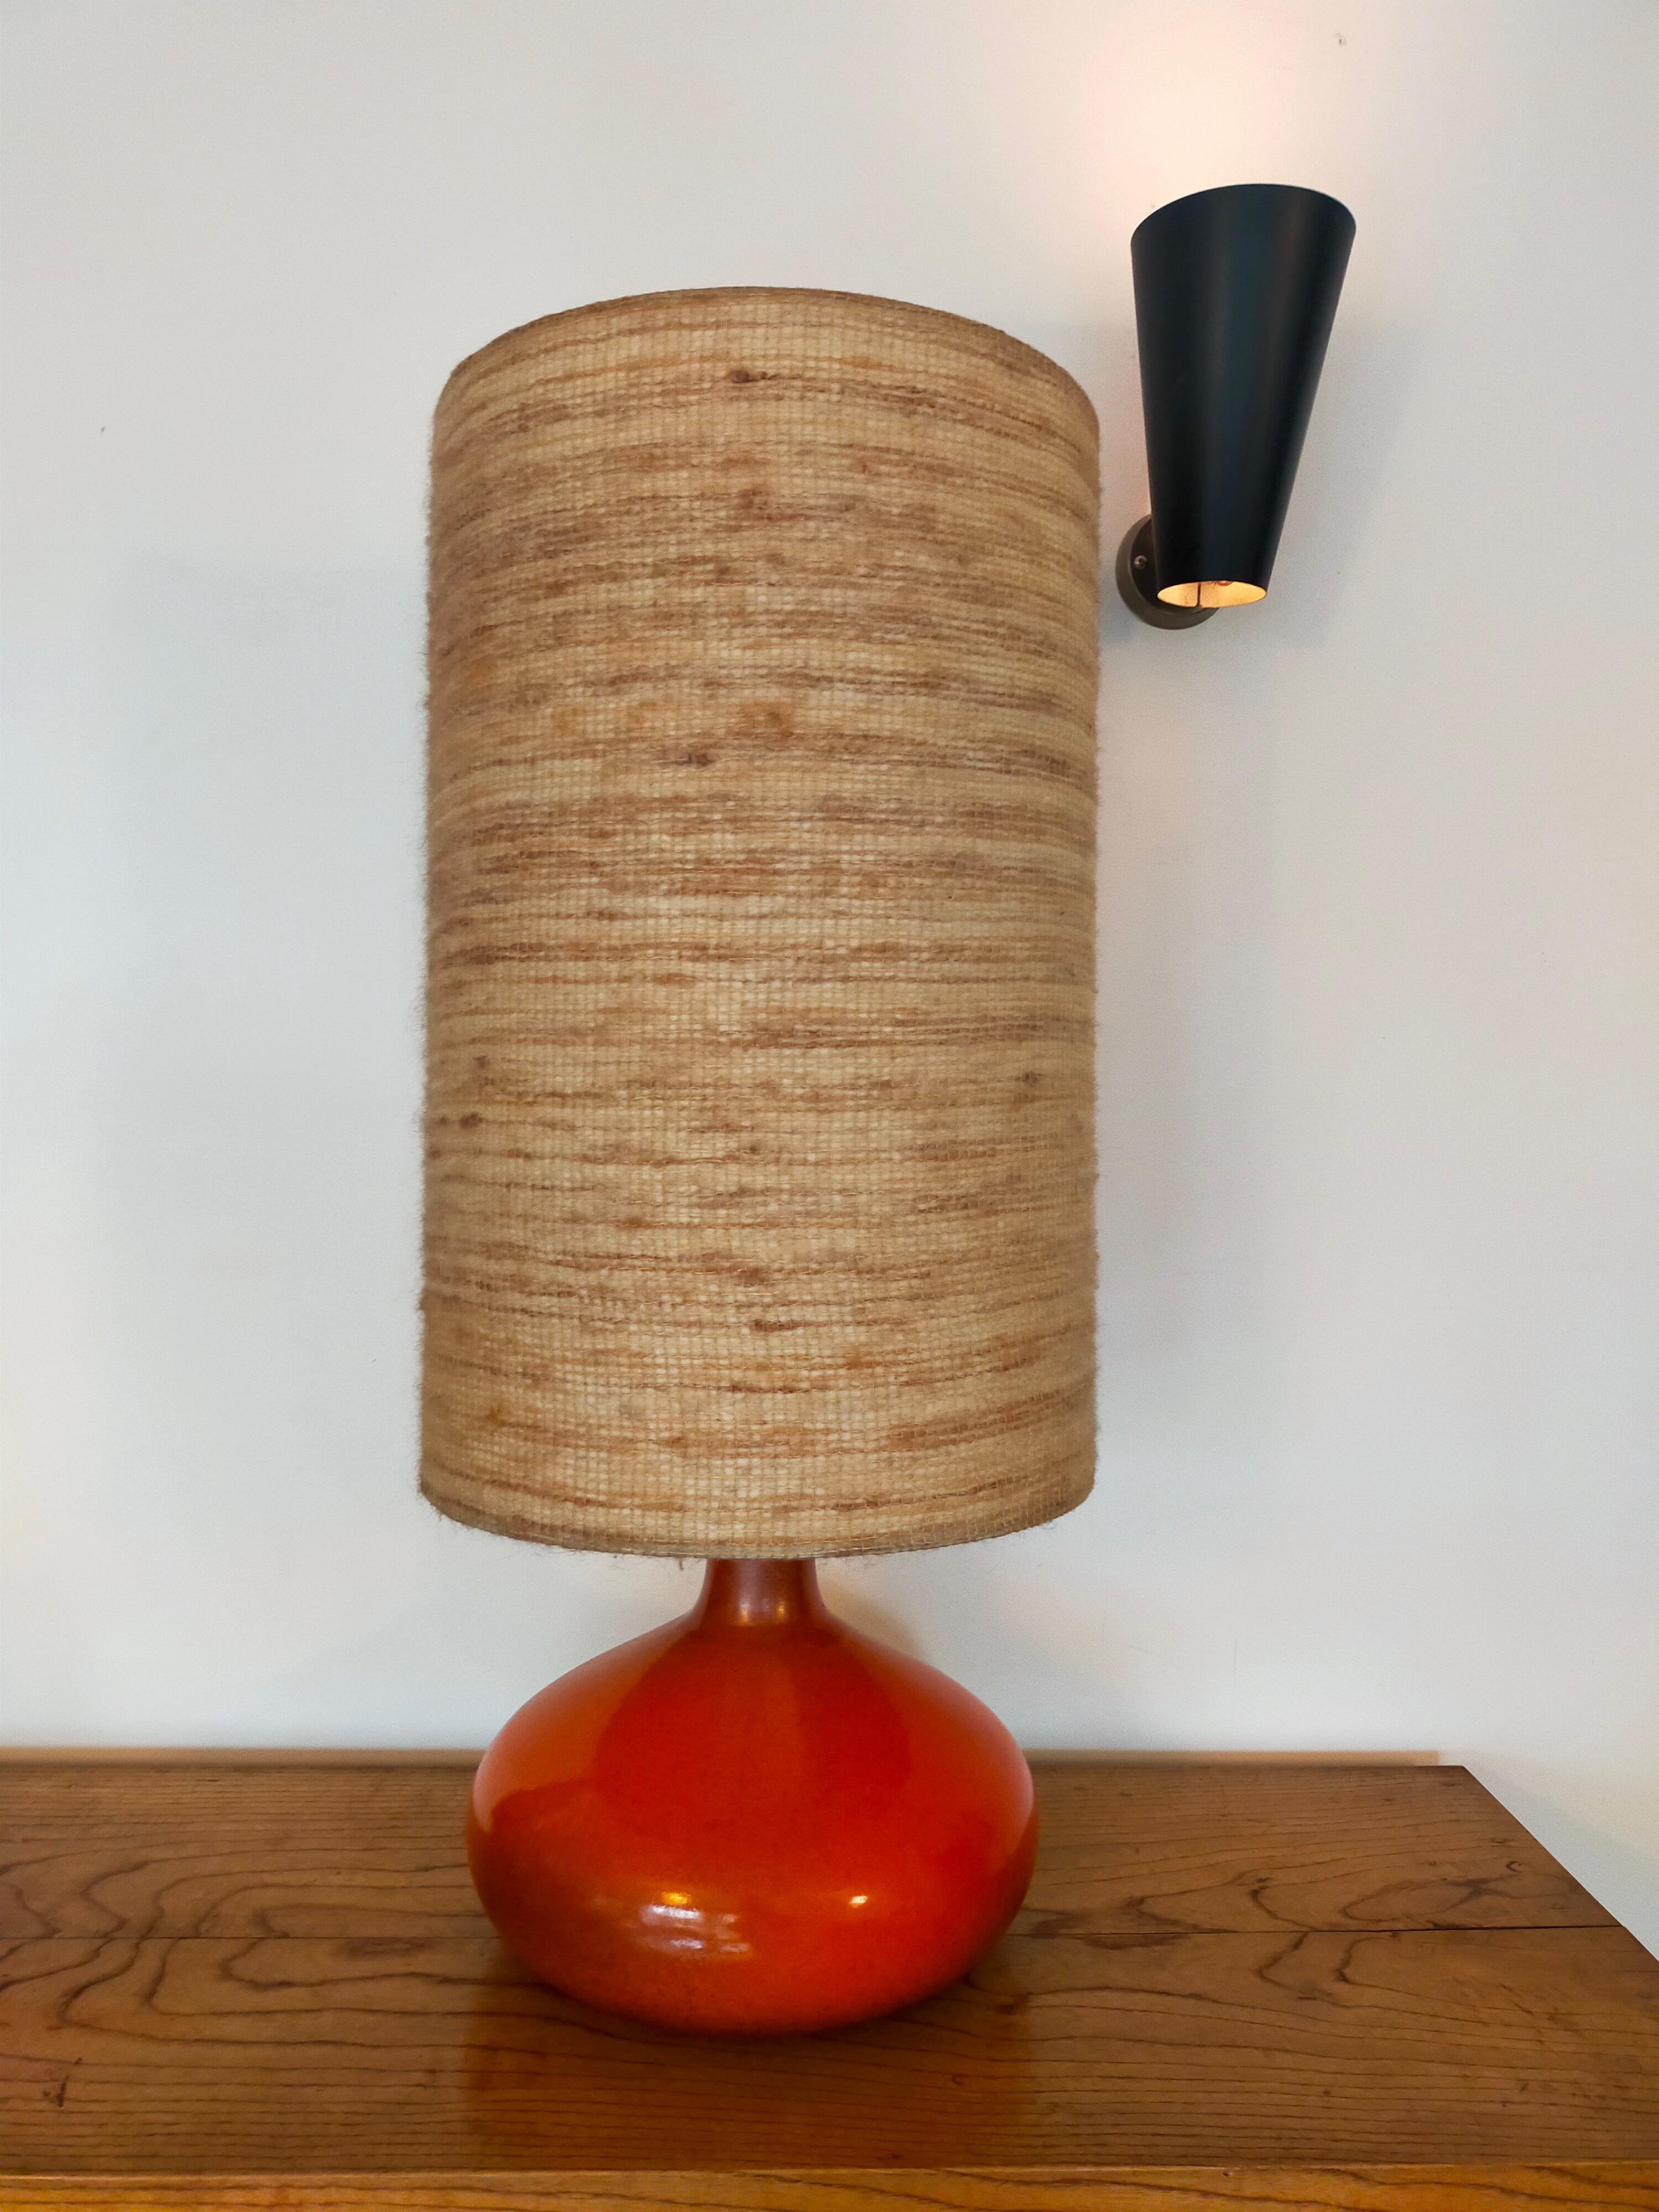 Lampe en céramique émaillée orange rougeâtre de Jacques Lignier
Grand abat-jour cylindrique en fibre naturelle
Signature J L A en relief